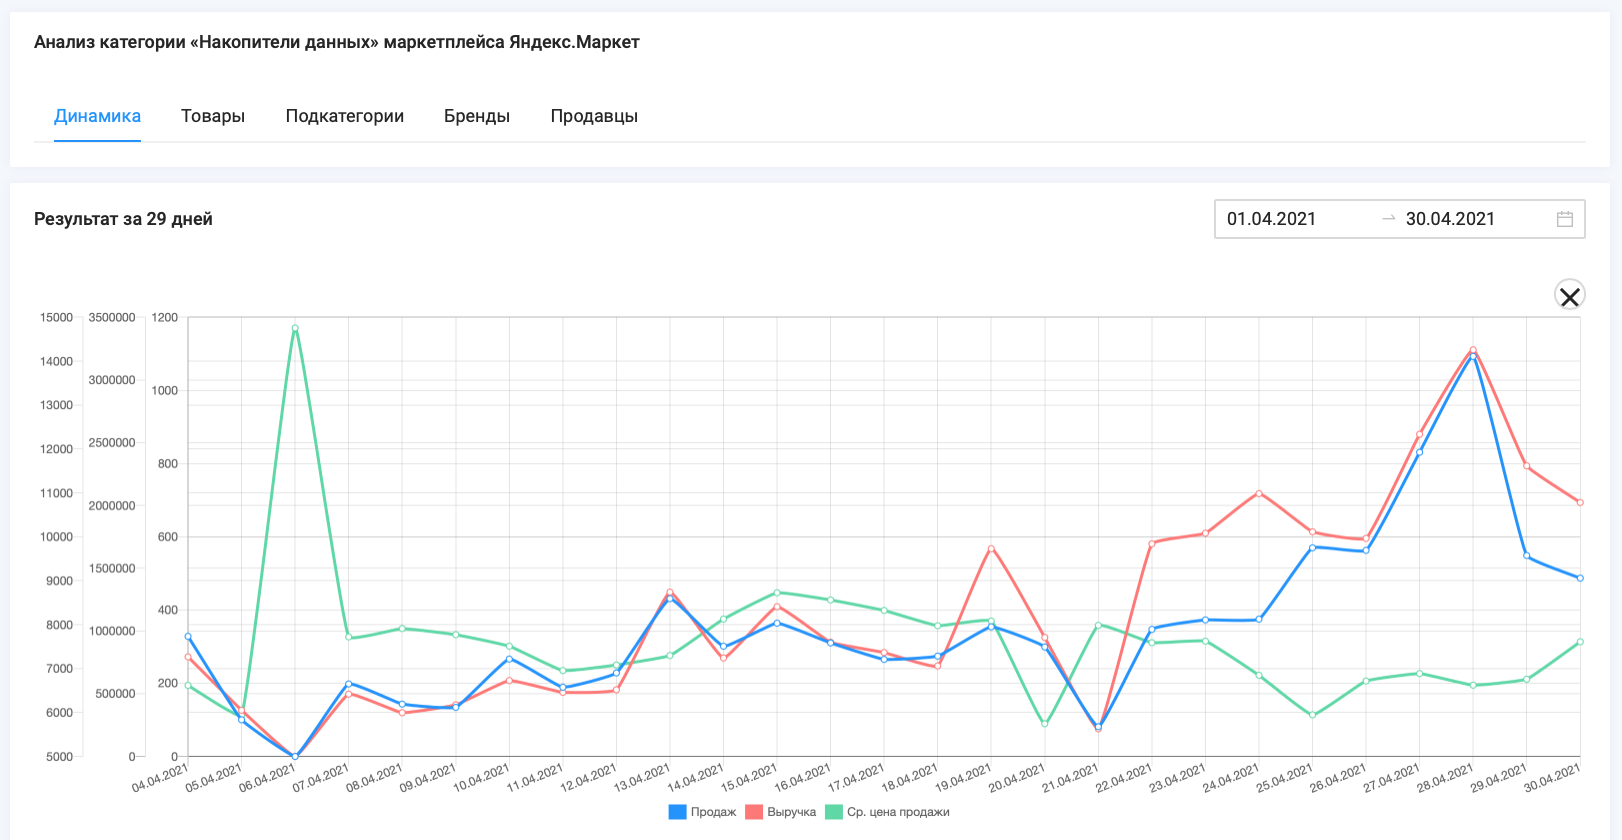 Данные по объемам продаж, выручке и средней цене товаров категории "Накопители данных" маркетплейса Яндекс.Маркет, 1.04.2021 - 30.04.2021, сервис аналитики маркетплейсов SellerFox